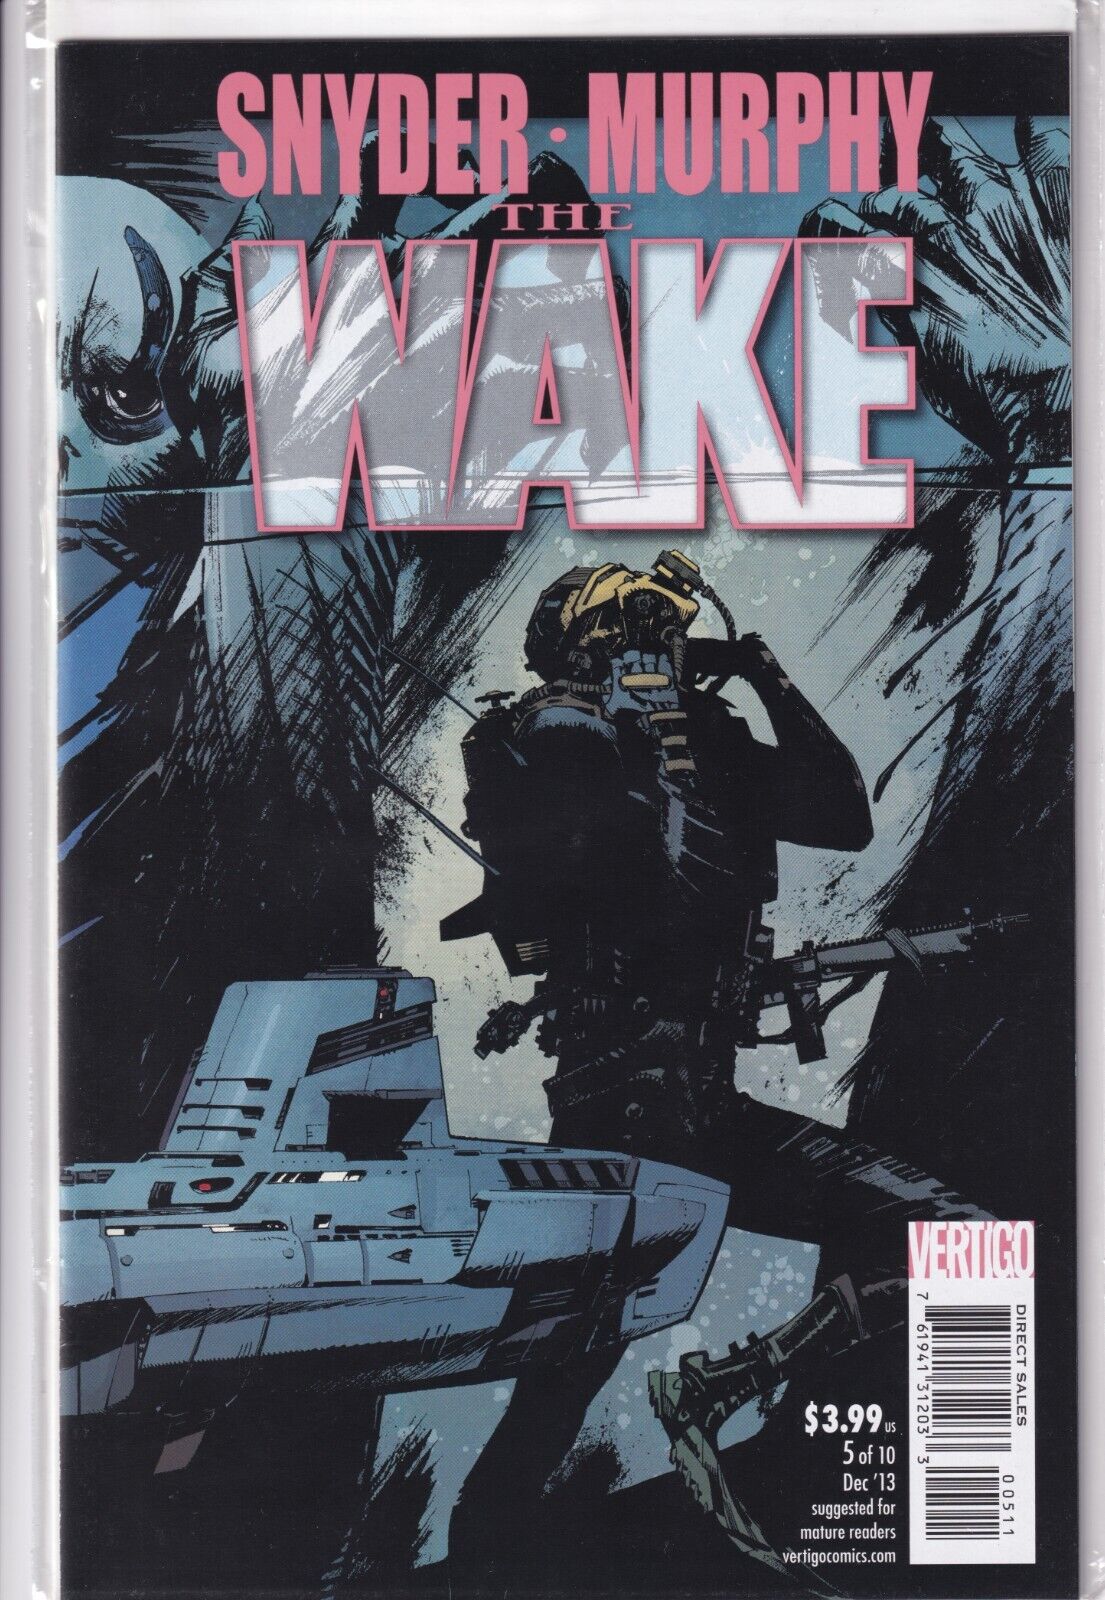 The Wake #5 Cover 1A (DC Comics/Vertigo 2013) VF/NM (B&B) RARE